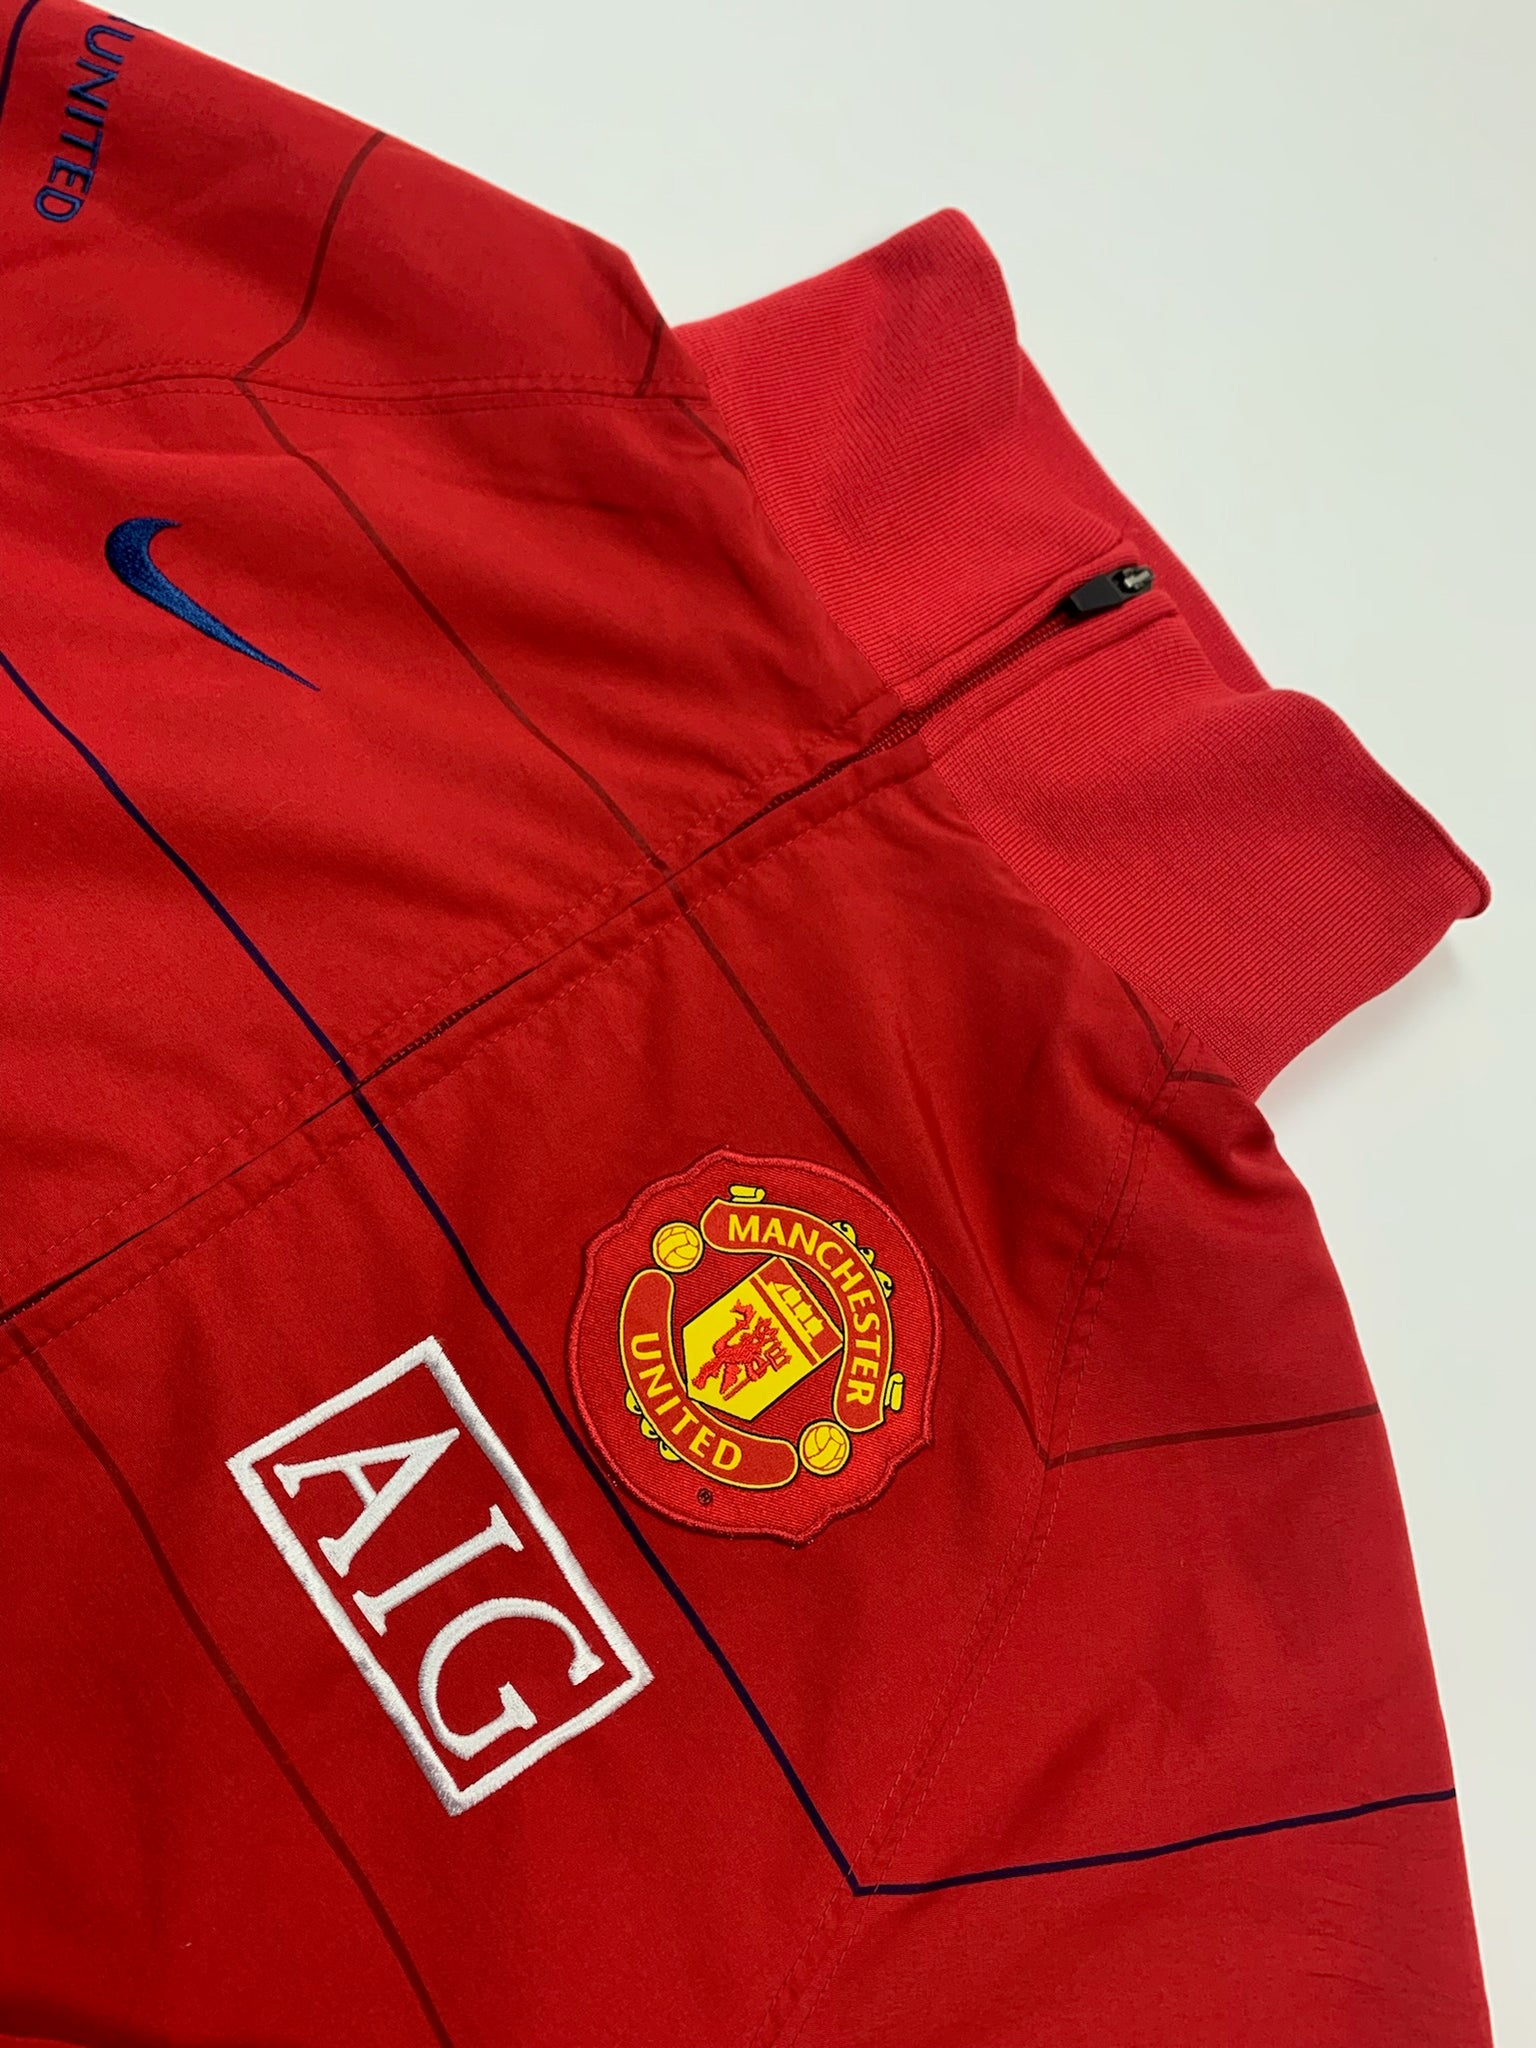 Nike Manchester United Track Jacket (S)